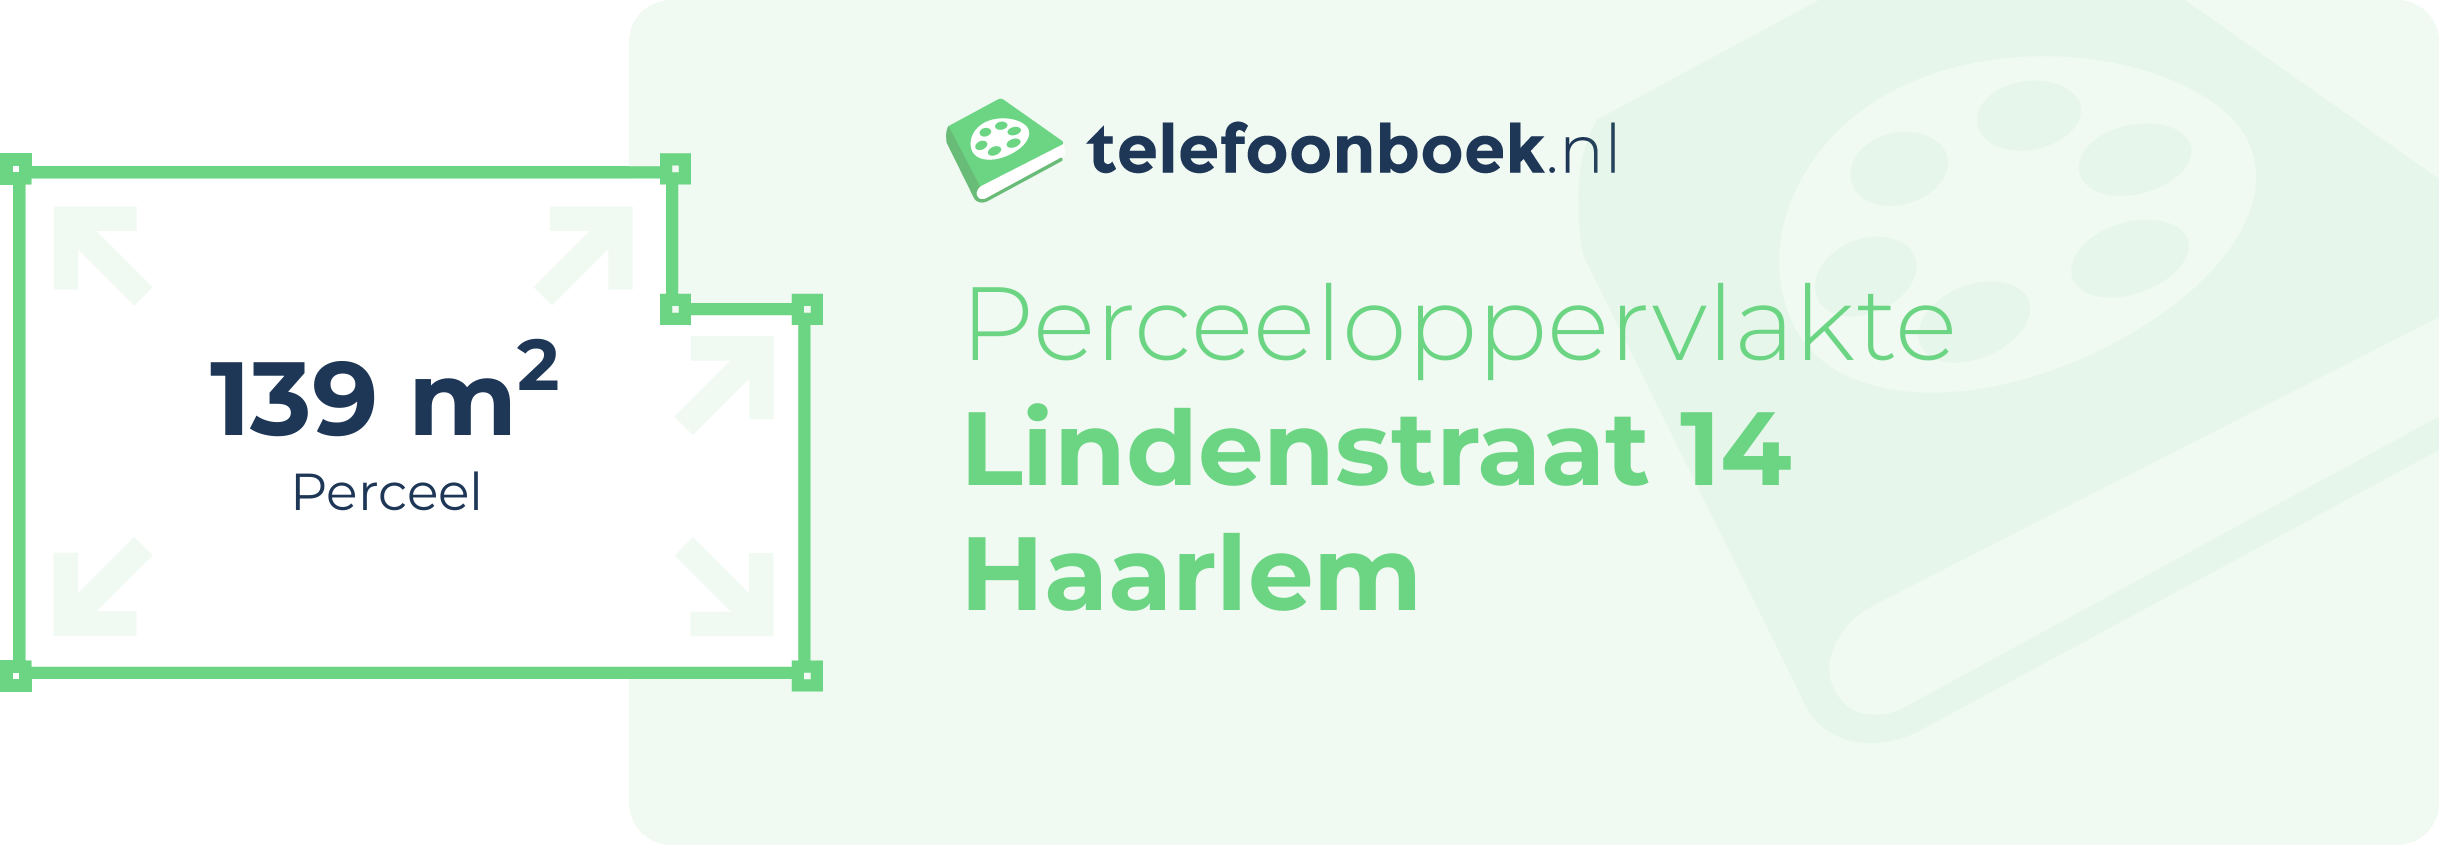 Perceeloppervlakte Lindenstraat 14 Haarlem